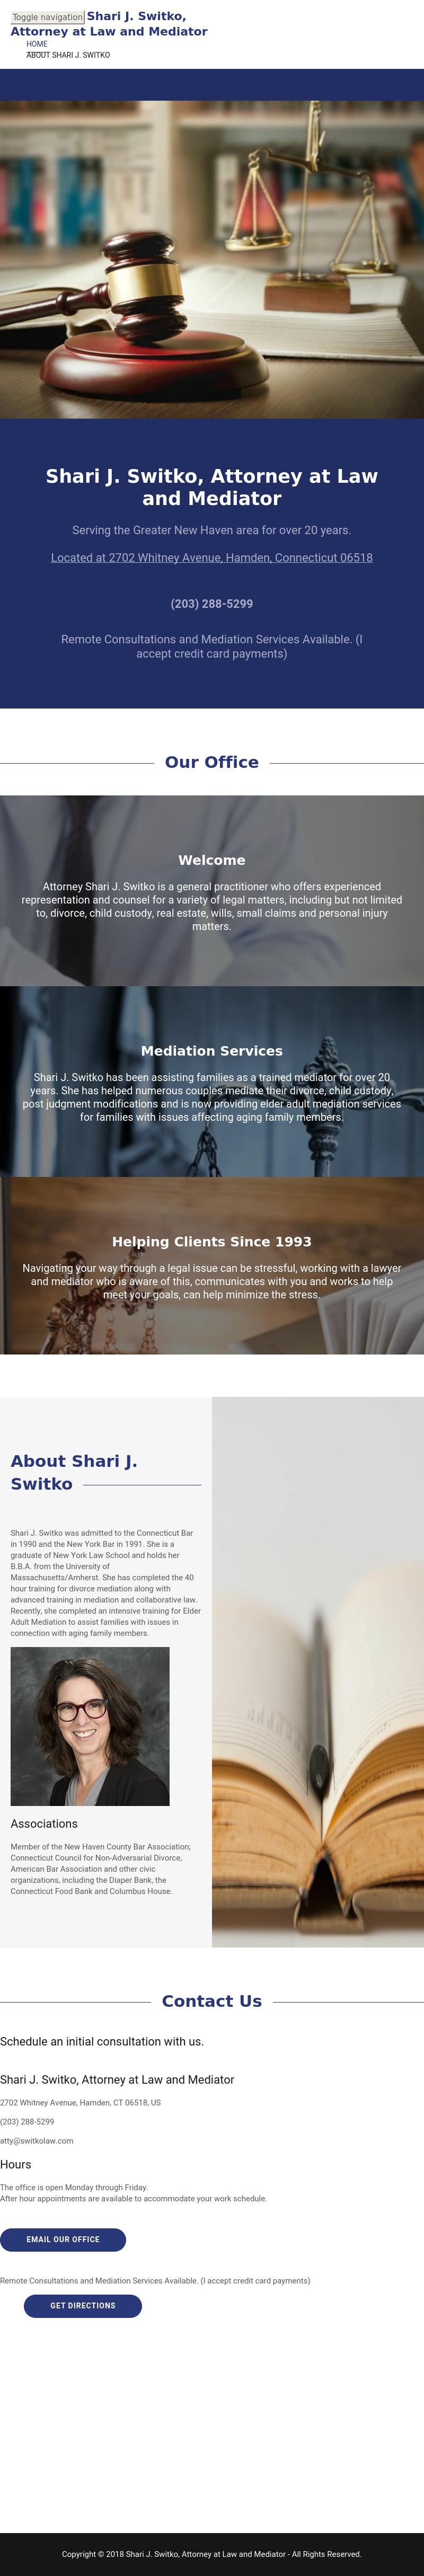 Switko Shari J - Hamden CT Lawyers